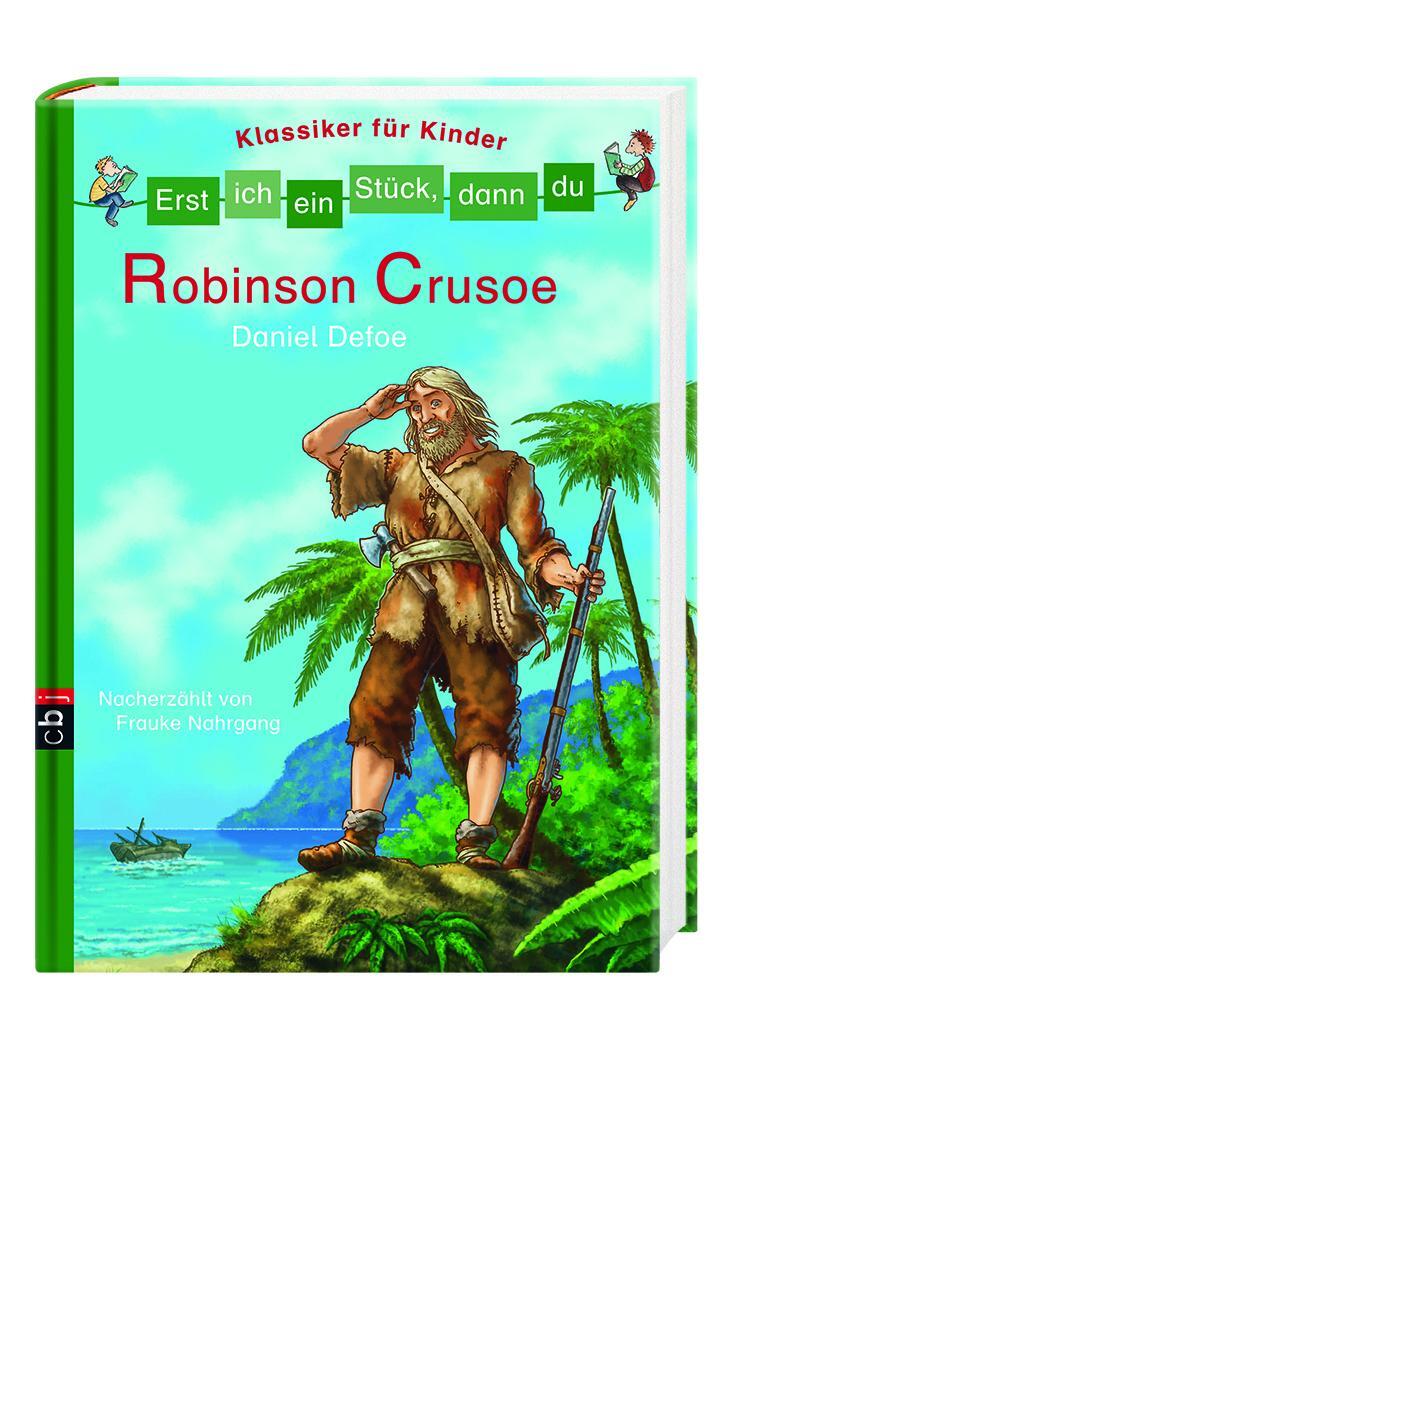 Bild: 9783570154861 | Erst ich ein Stück, dann du - Klassiker für Kinder - Robinson Crusoe